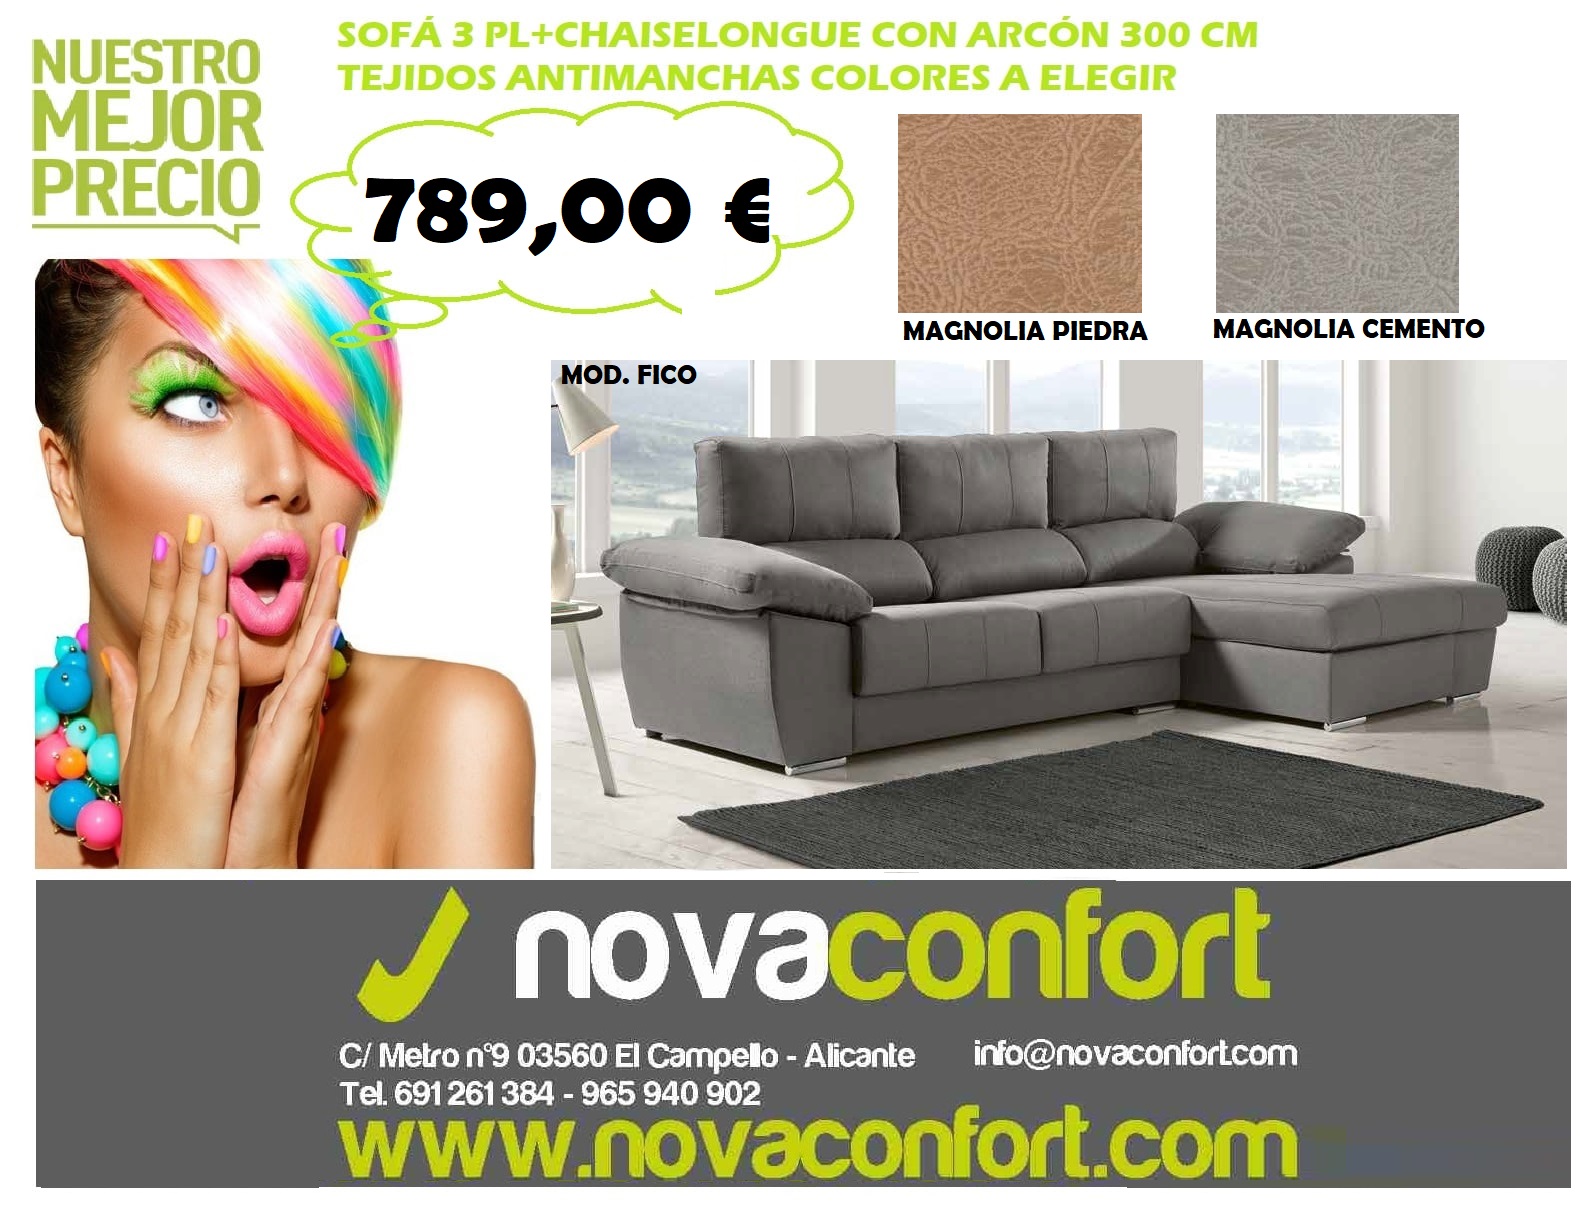 Novaconfort